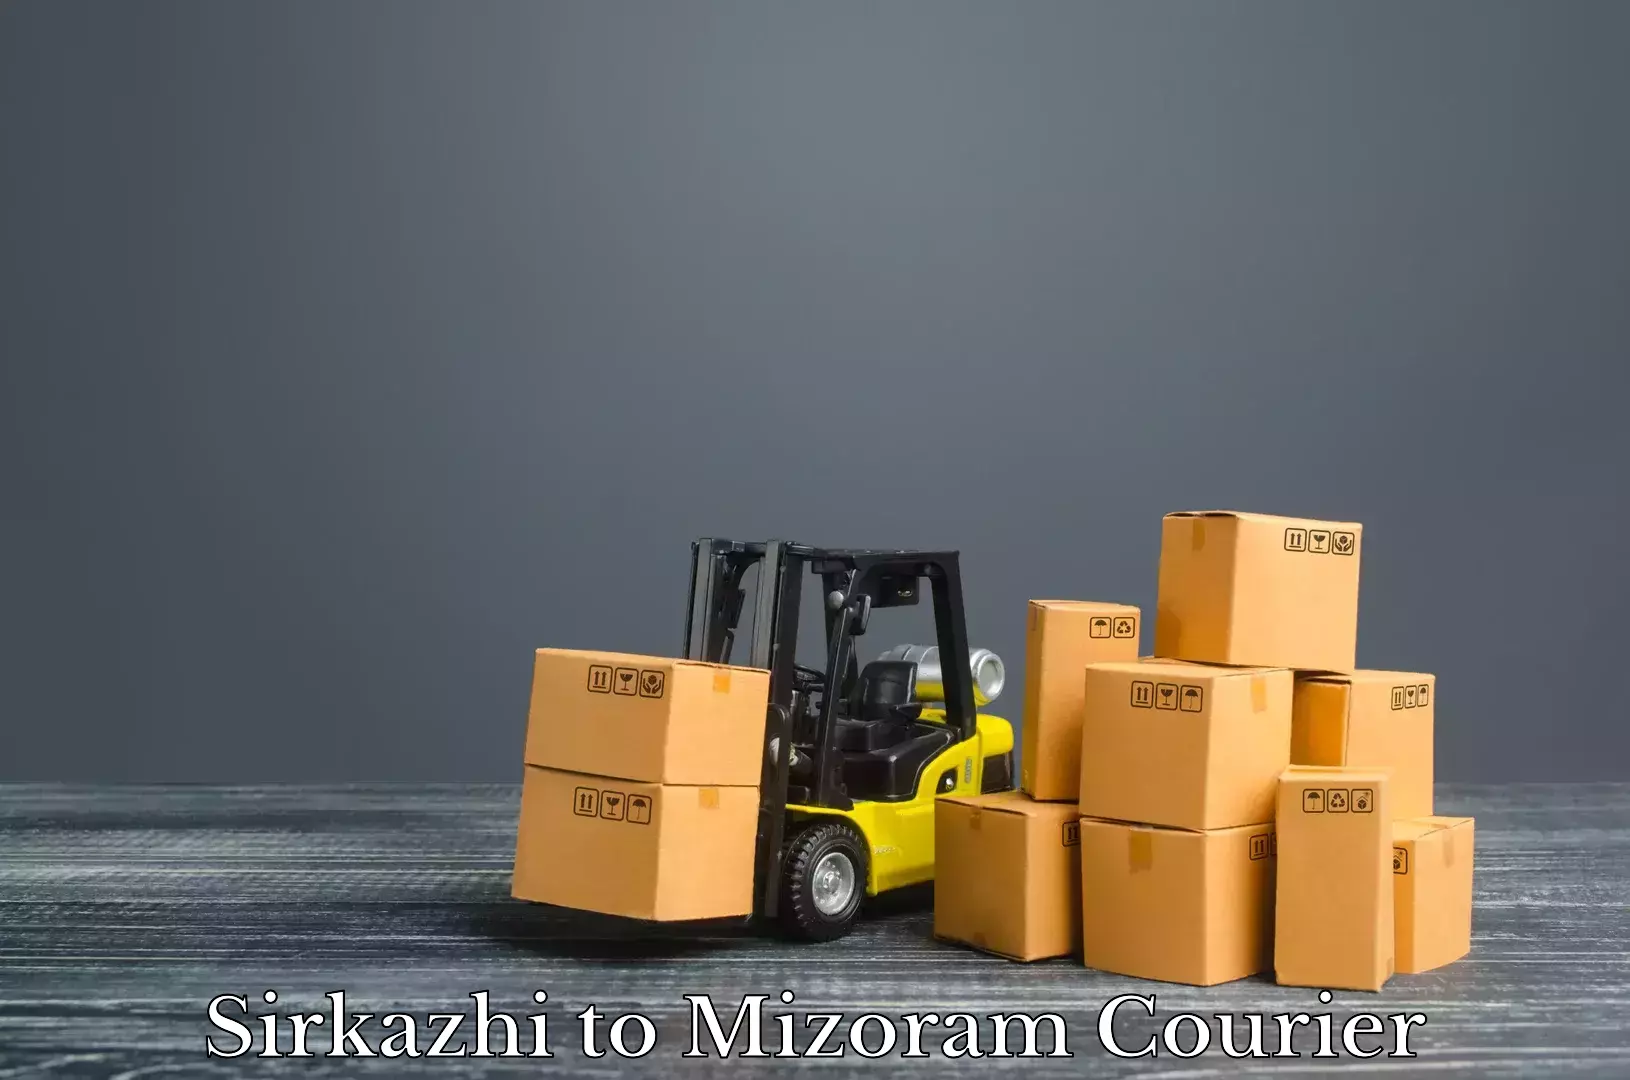 Urgent luggage shipment Sirkazhi to Aizawl